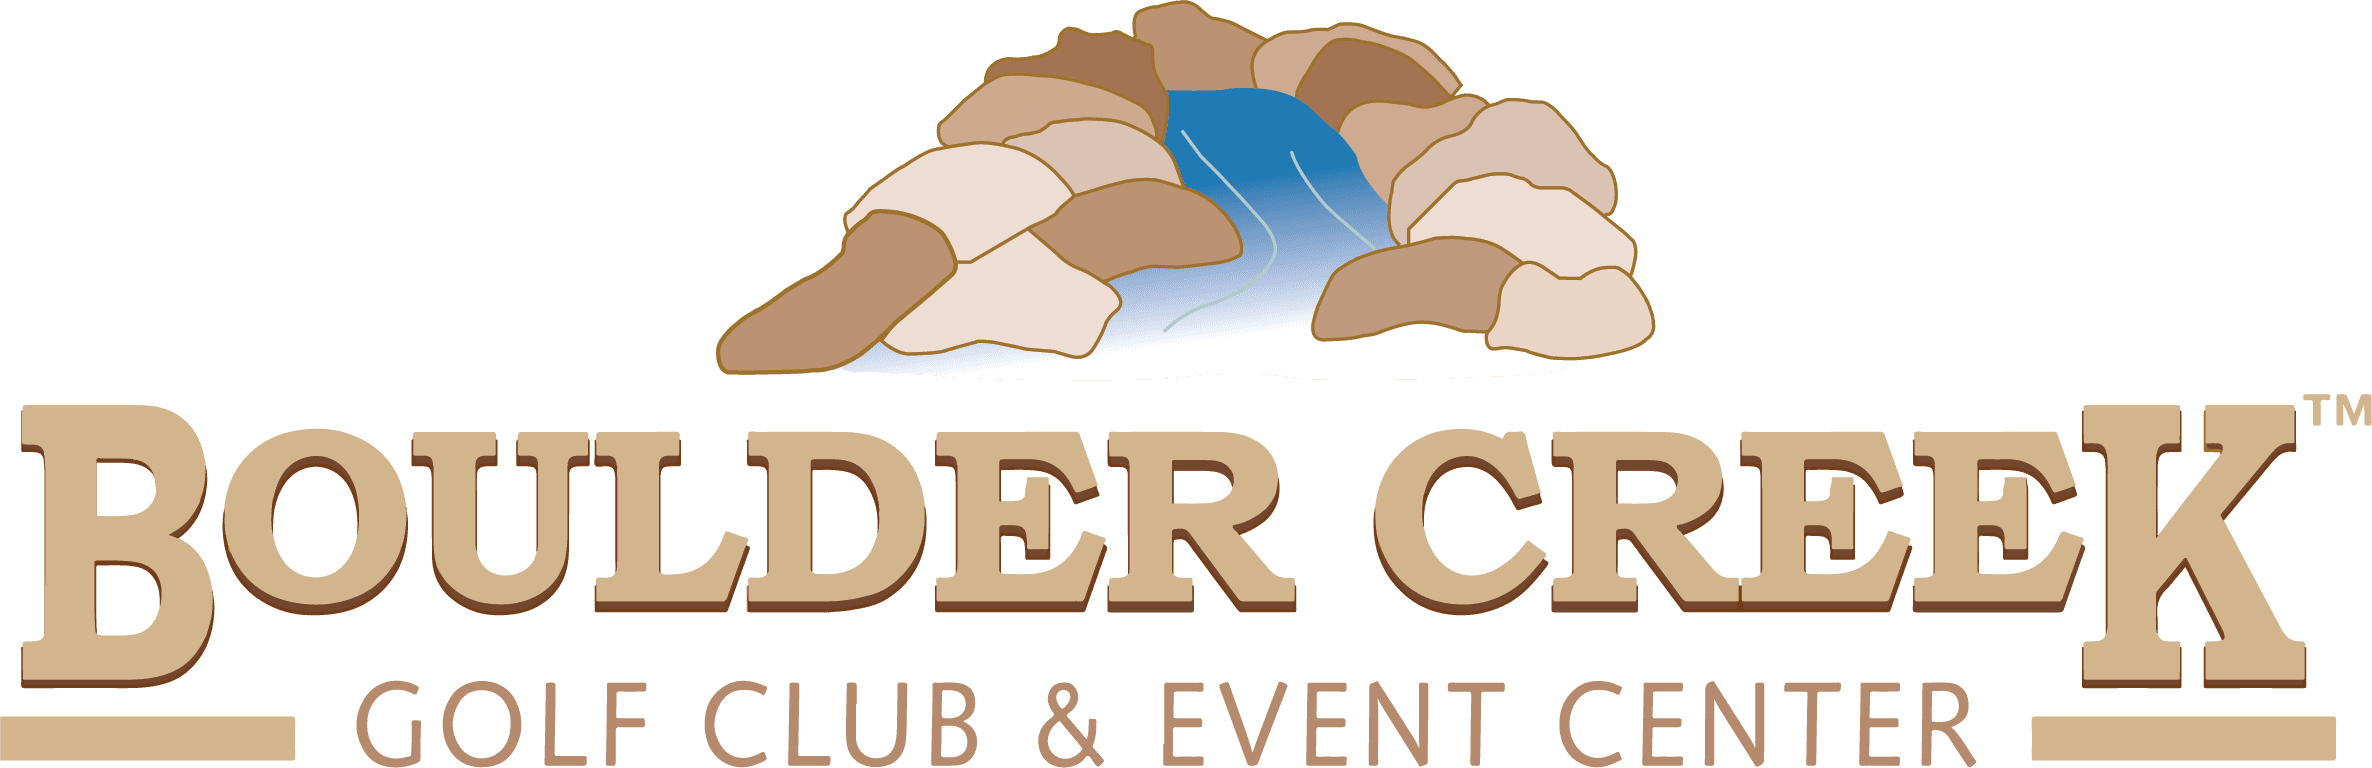 Boulder Creek Golf club & Event Center Logo